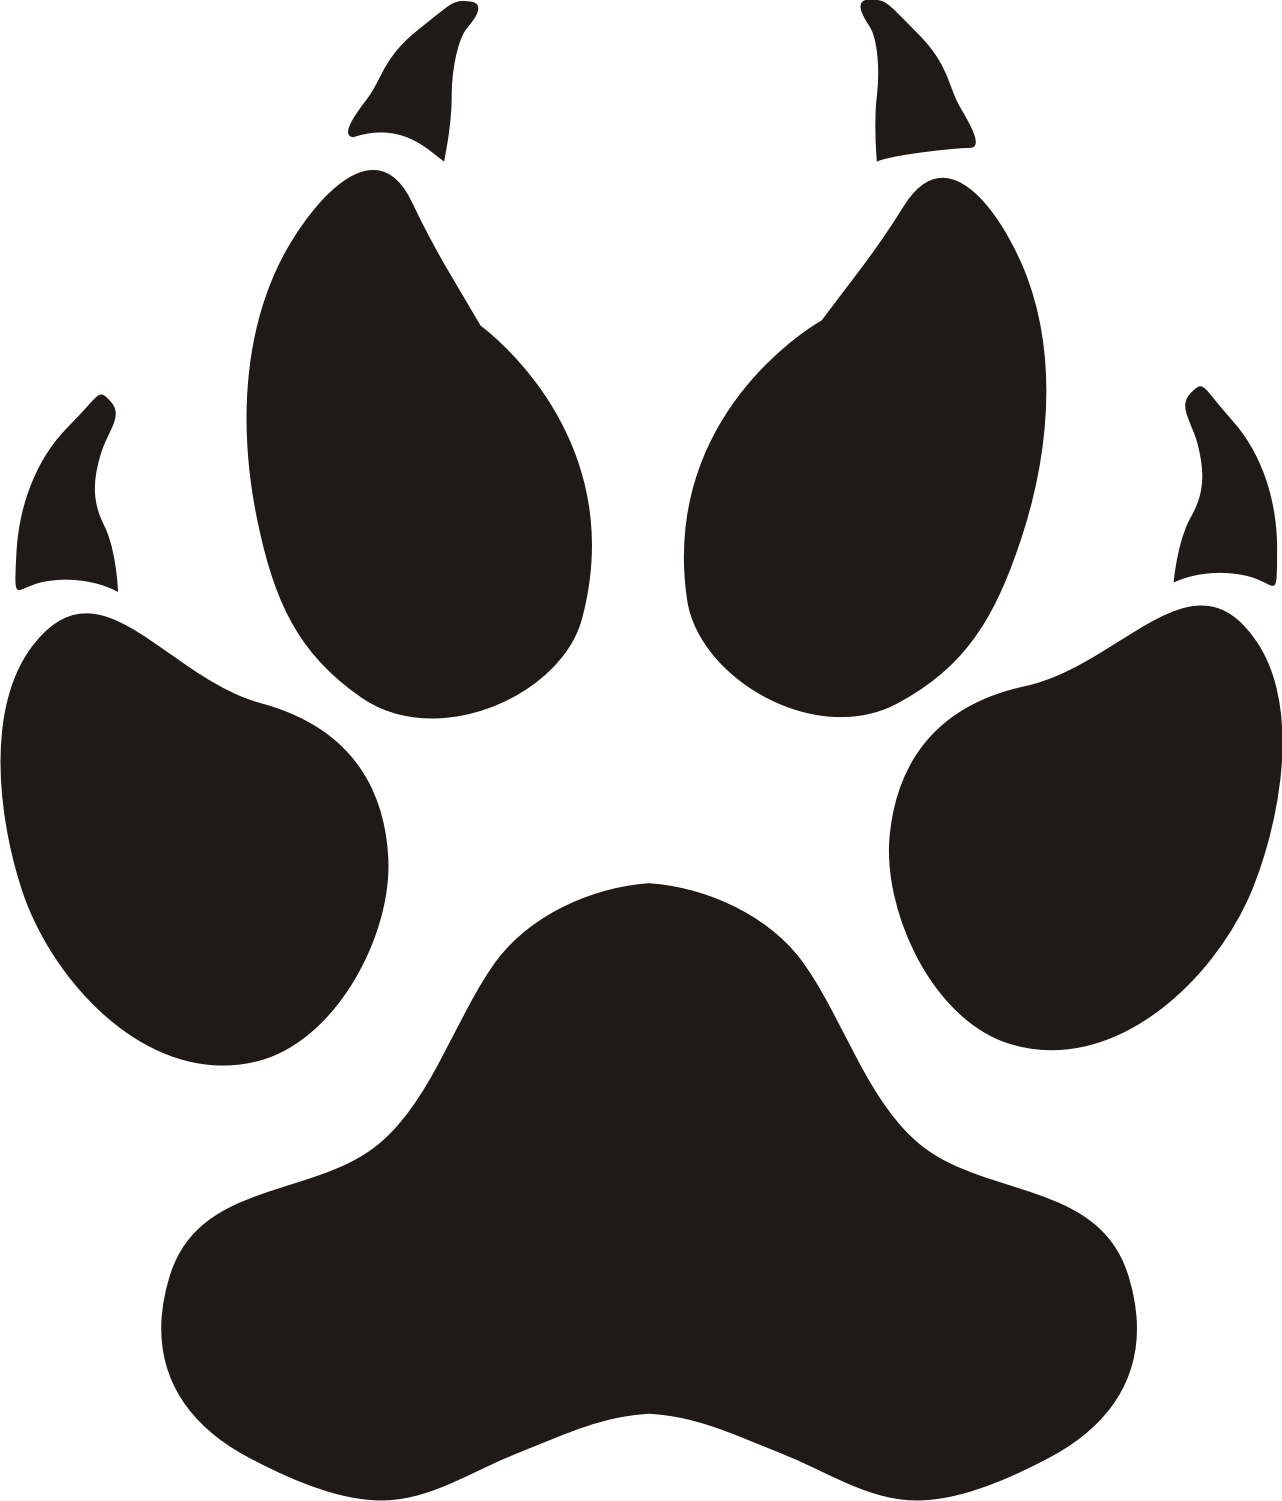 Black Paw Print Logo - Free Leopard Paw Prints, Download Free Clip Art, Free Clip Art